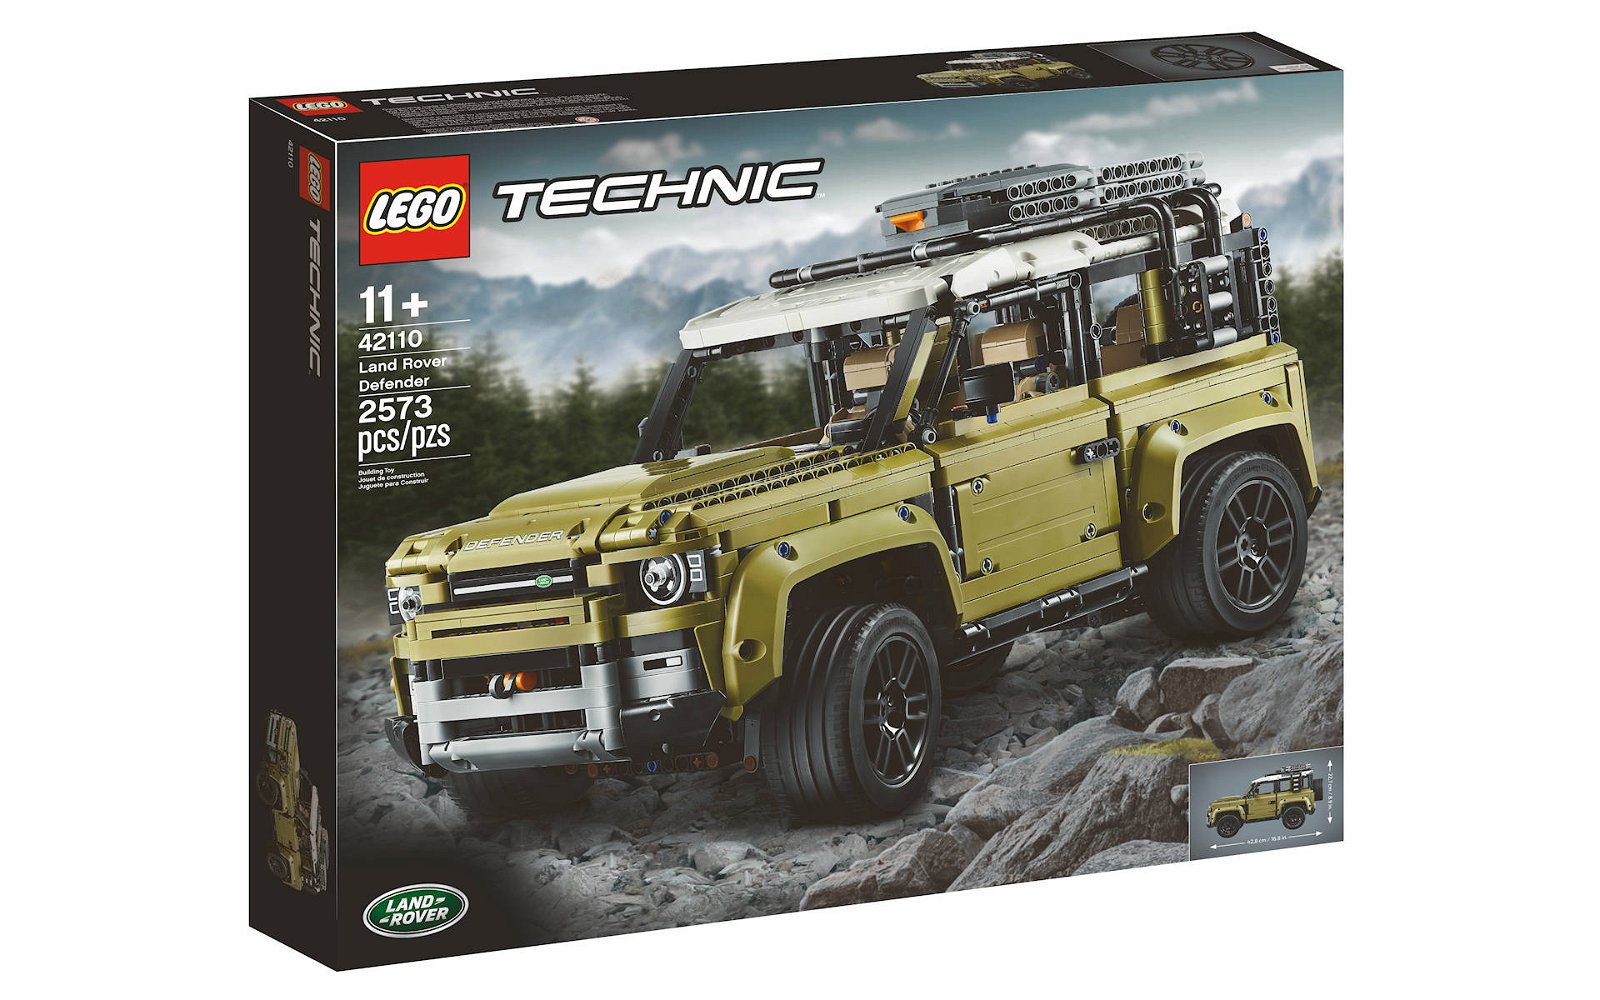 Immagine di LEGO set # 42110 Land Rover Defender: la recensione